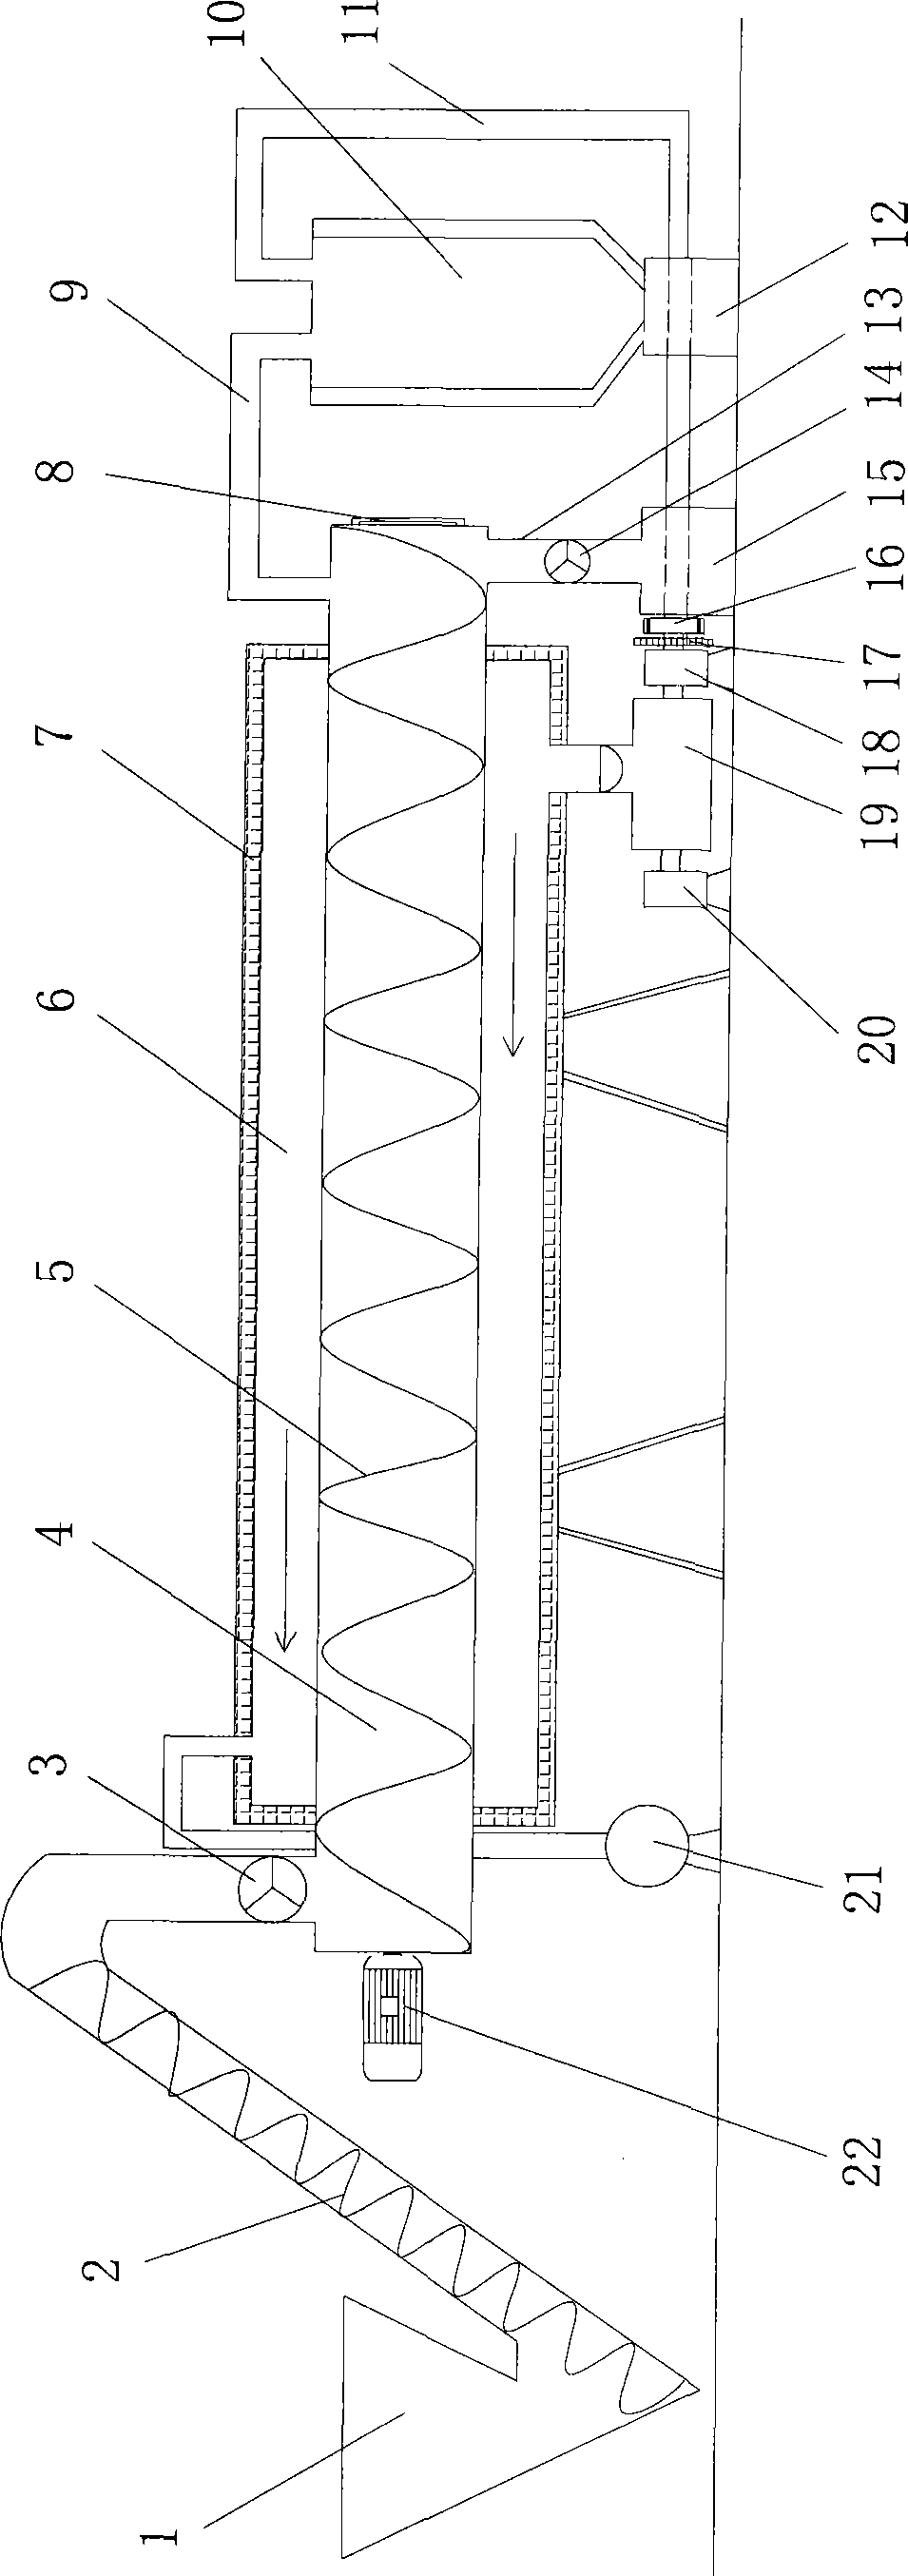 Horizontal-type continuous biochar carbonization device